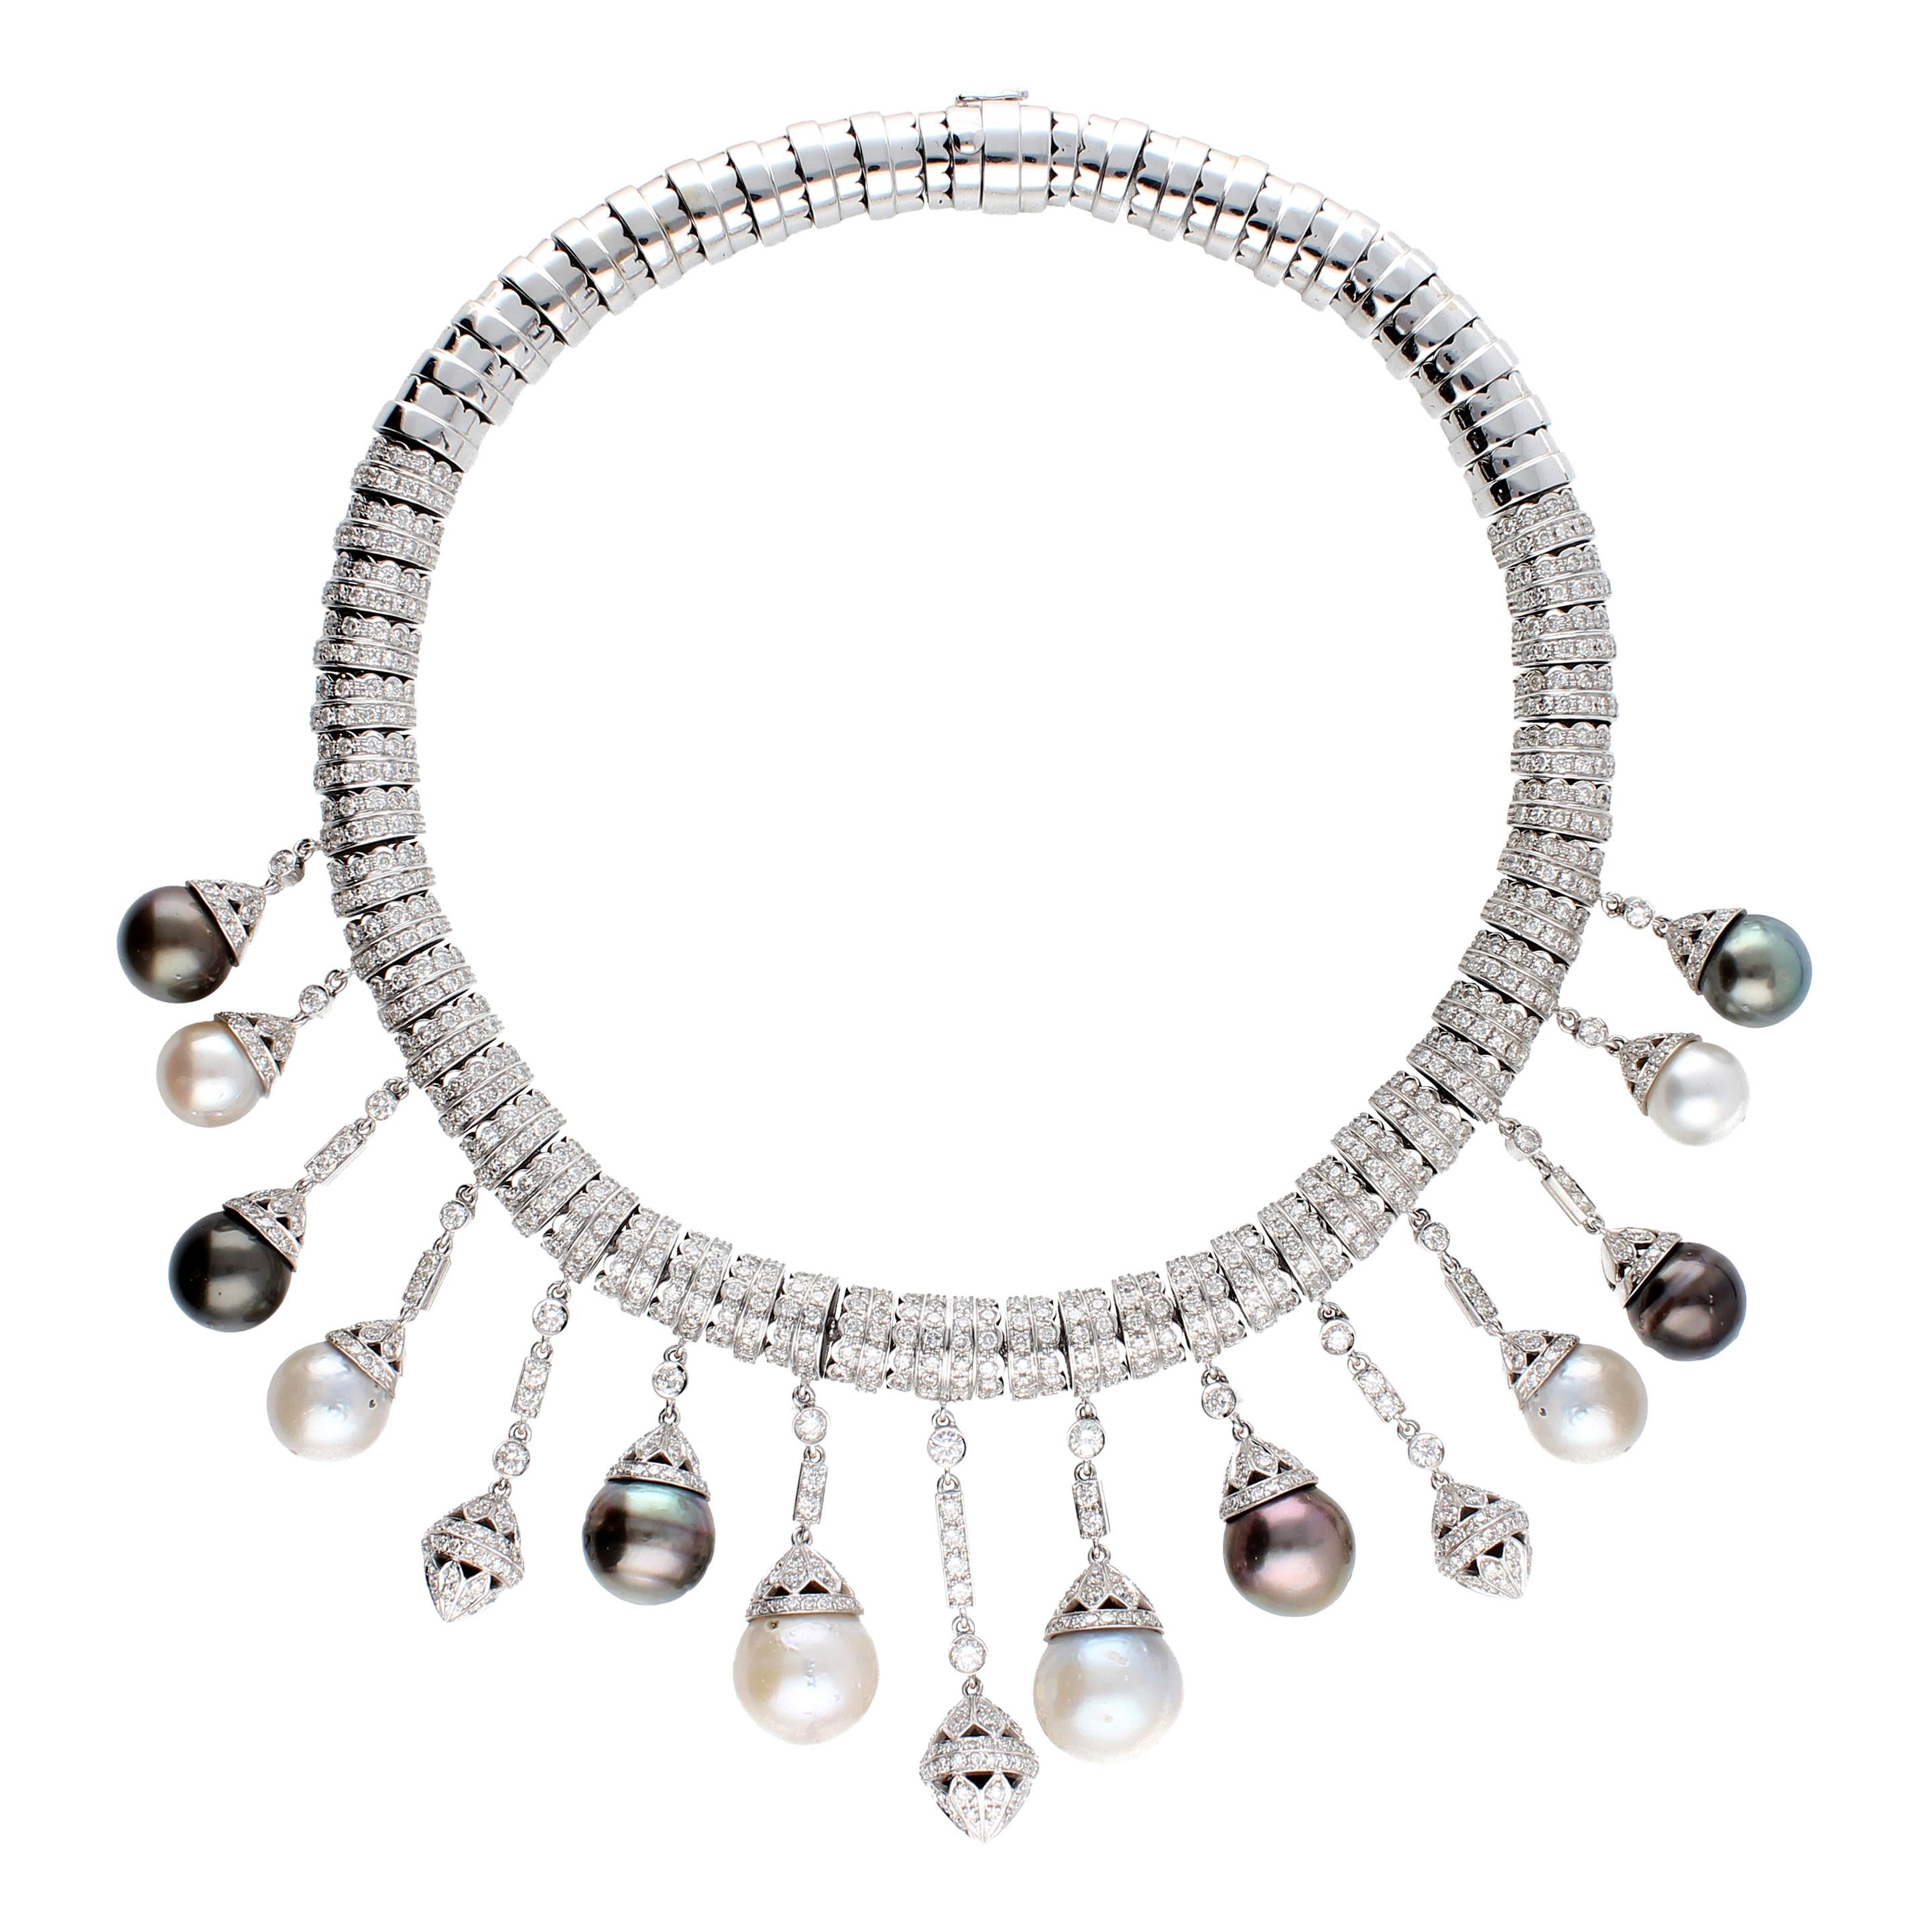 Collier en or blanc et diamants, pendentifs avec perles blanches et noires S.S.